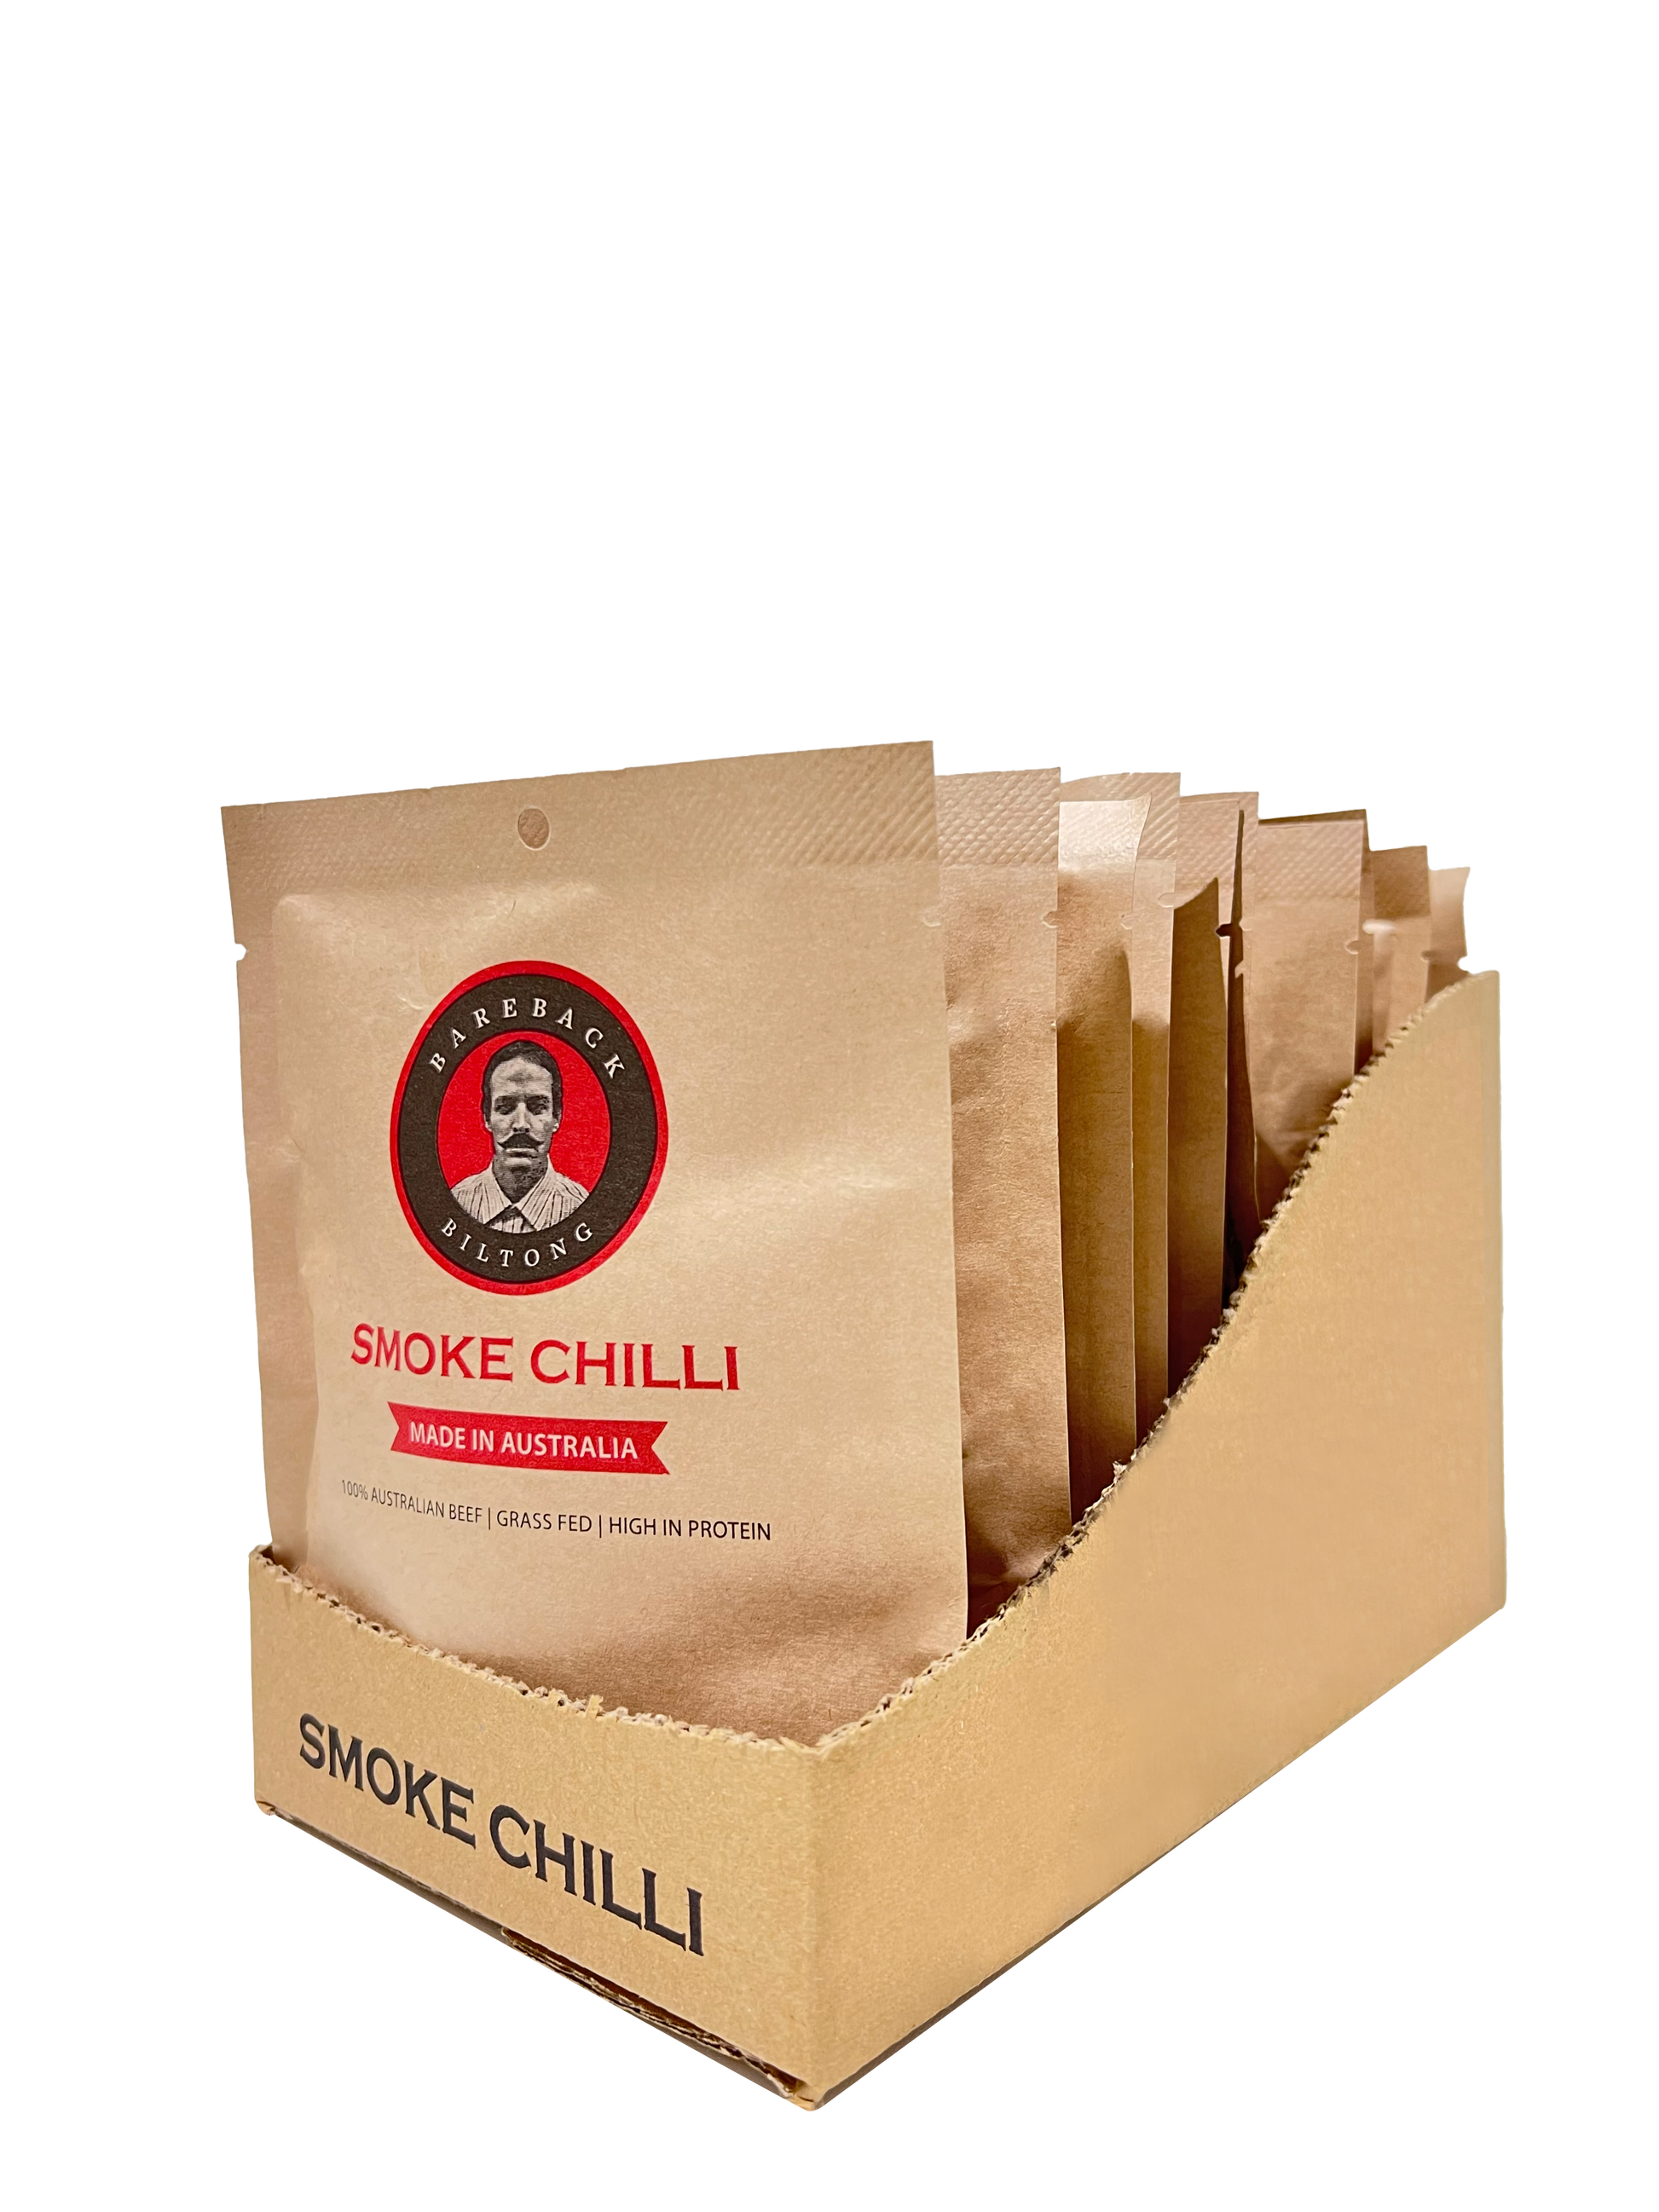 35g Smoke Chilli Biltong Box